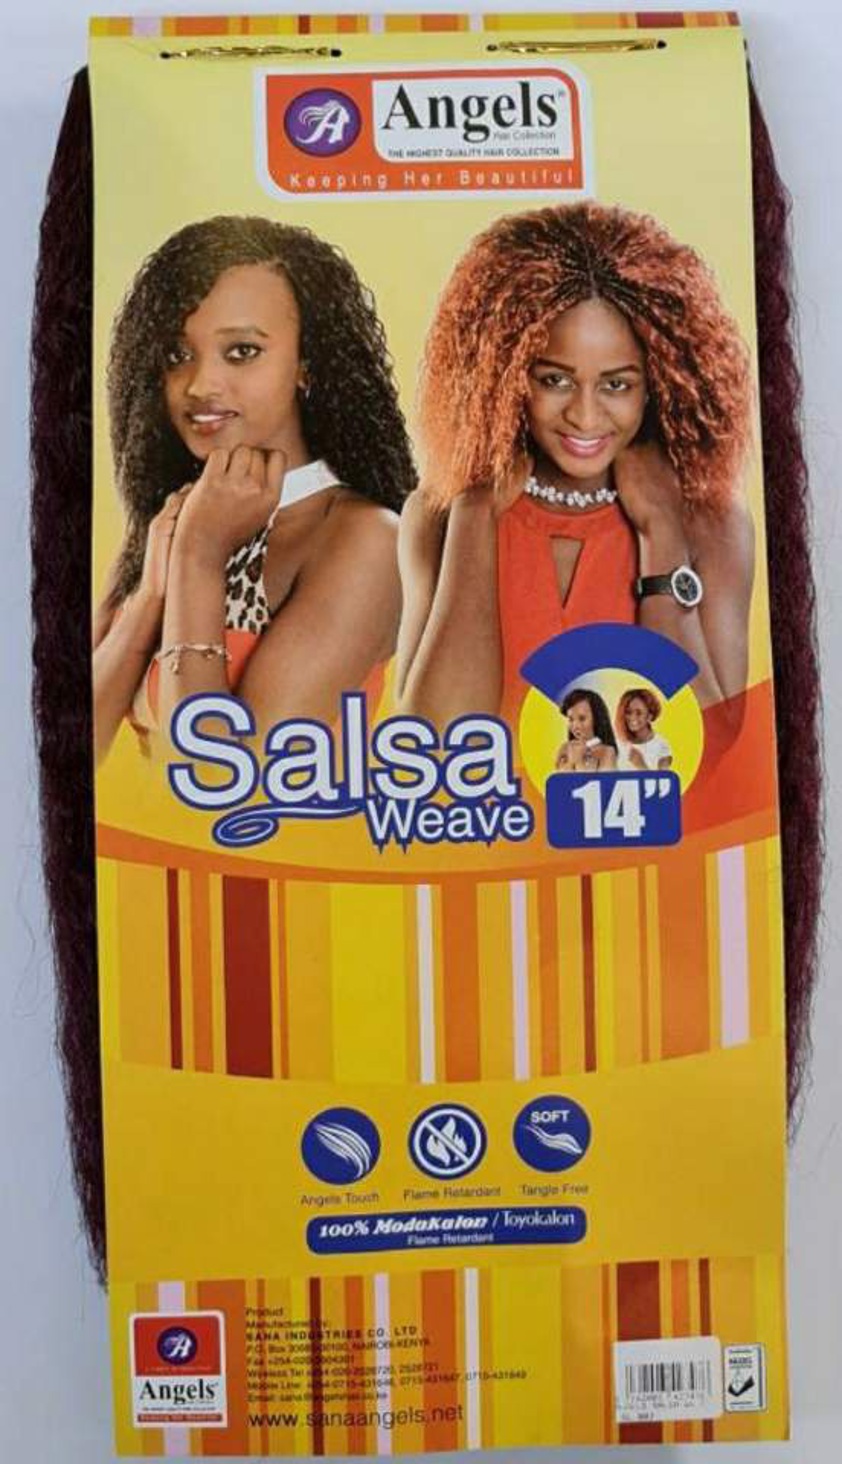 Salsa weave - 14", 150g, 2 bundles, Yaki